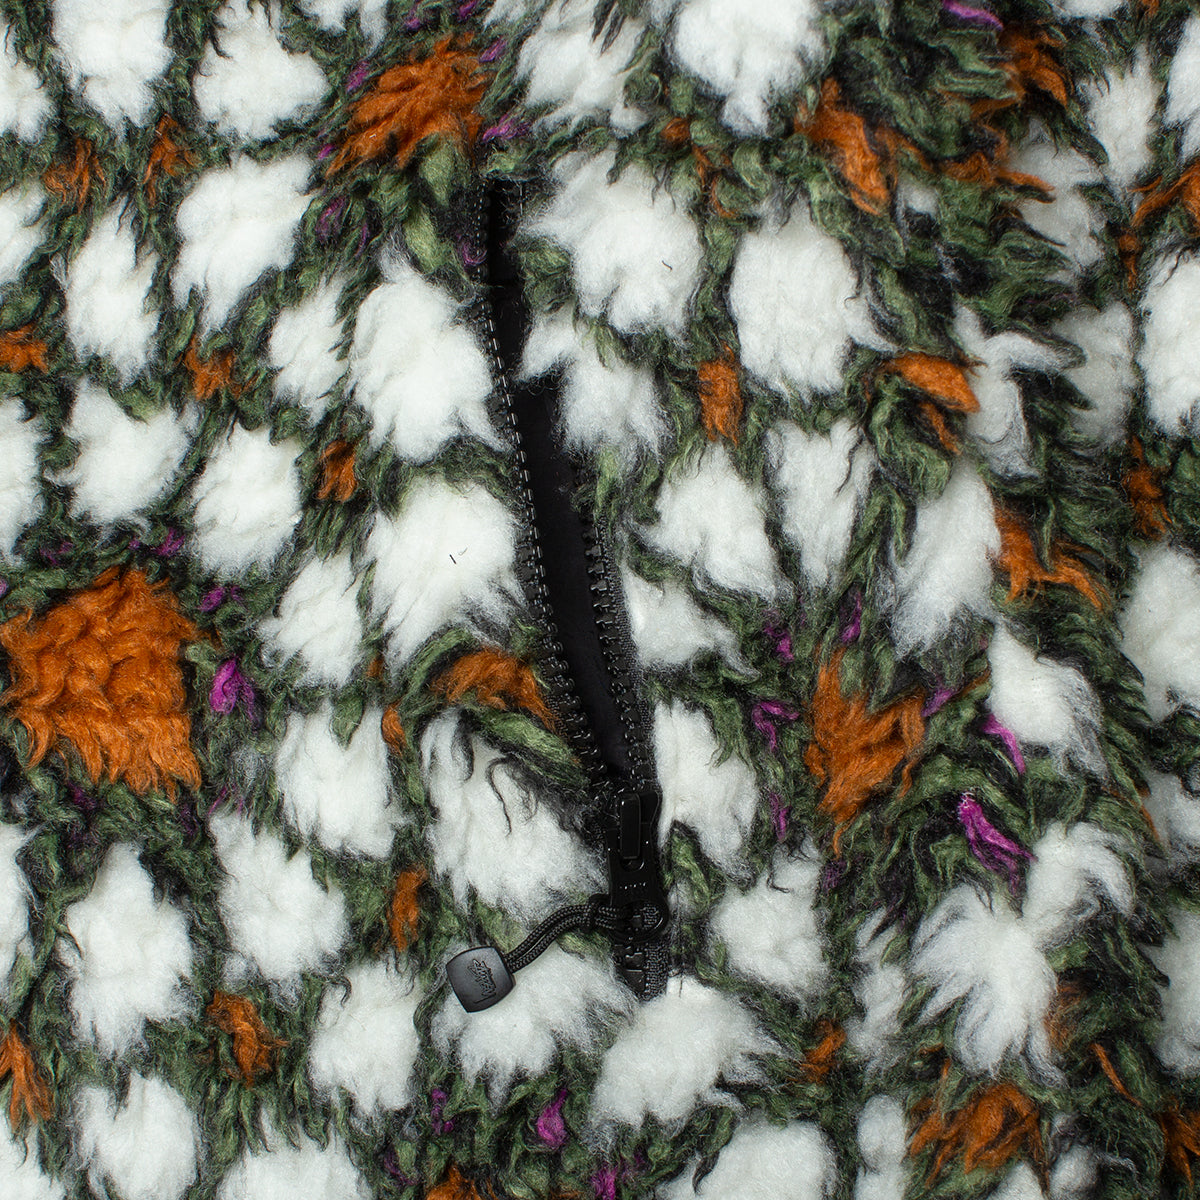 Pattern Sherpa Jacket – Premier